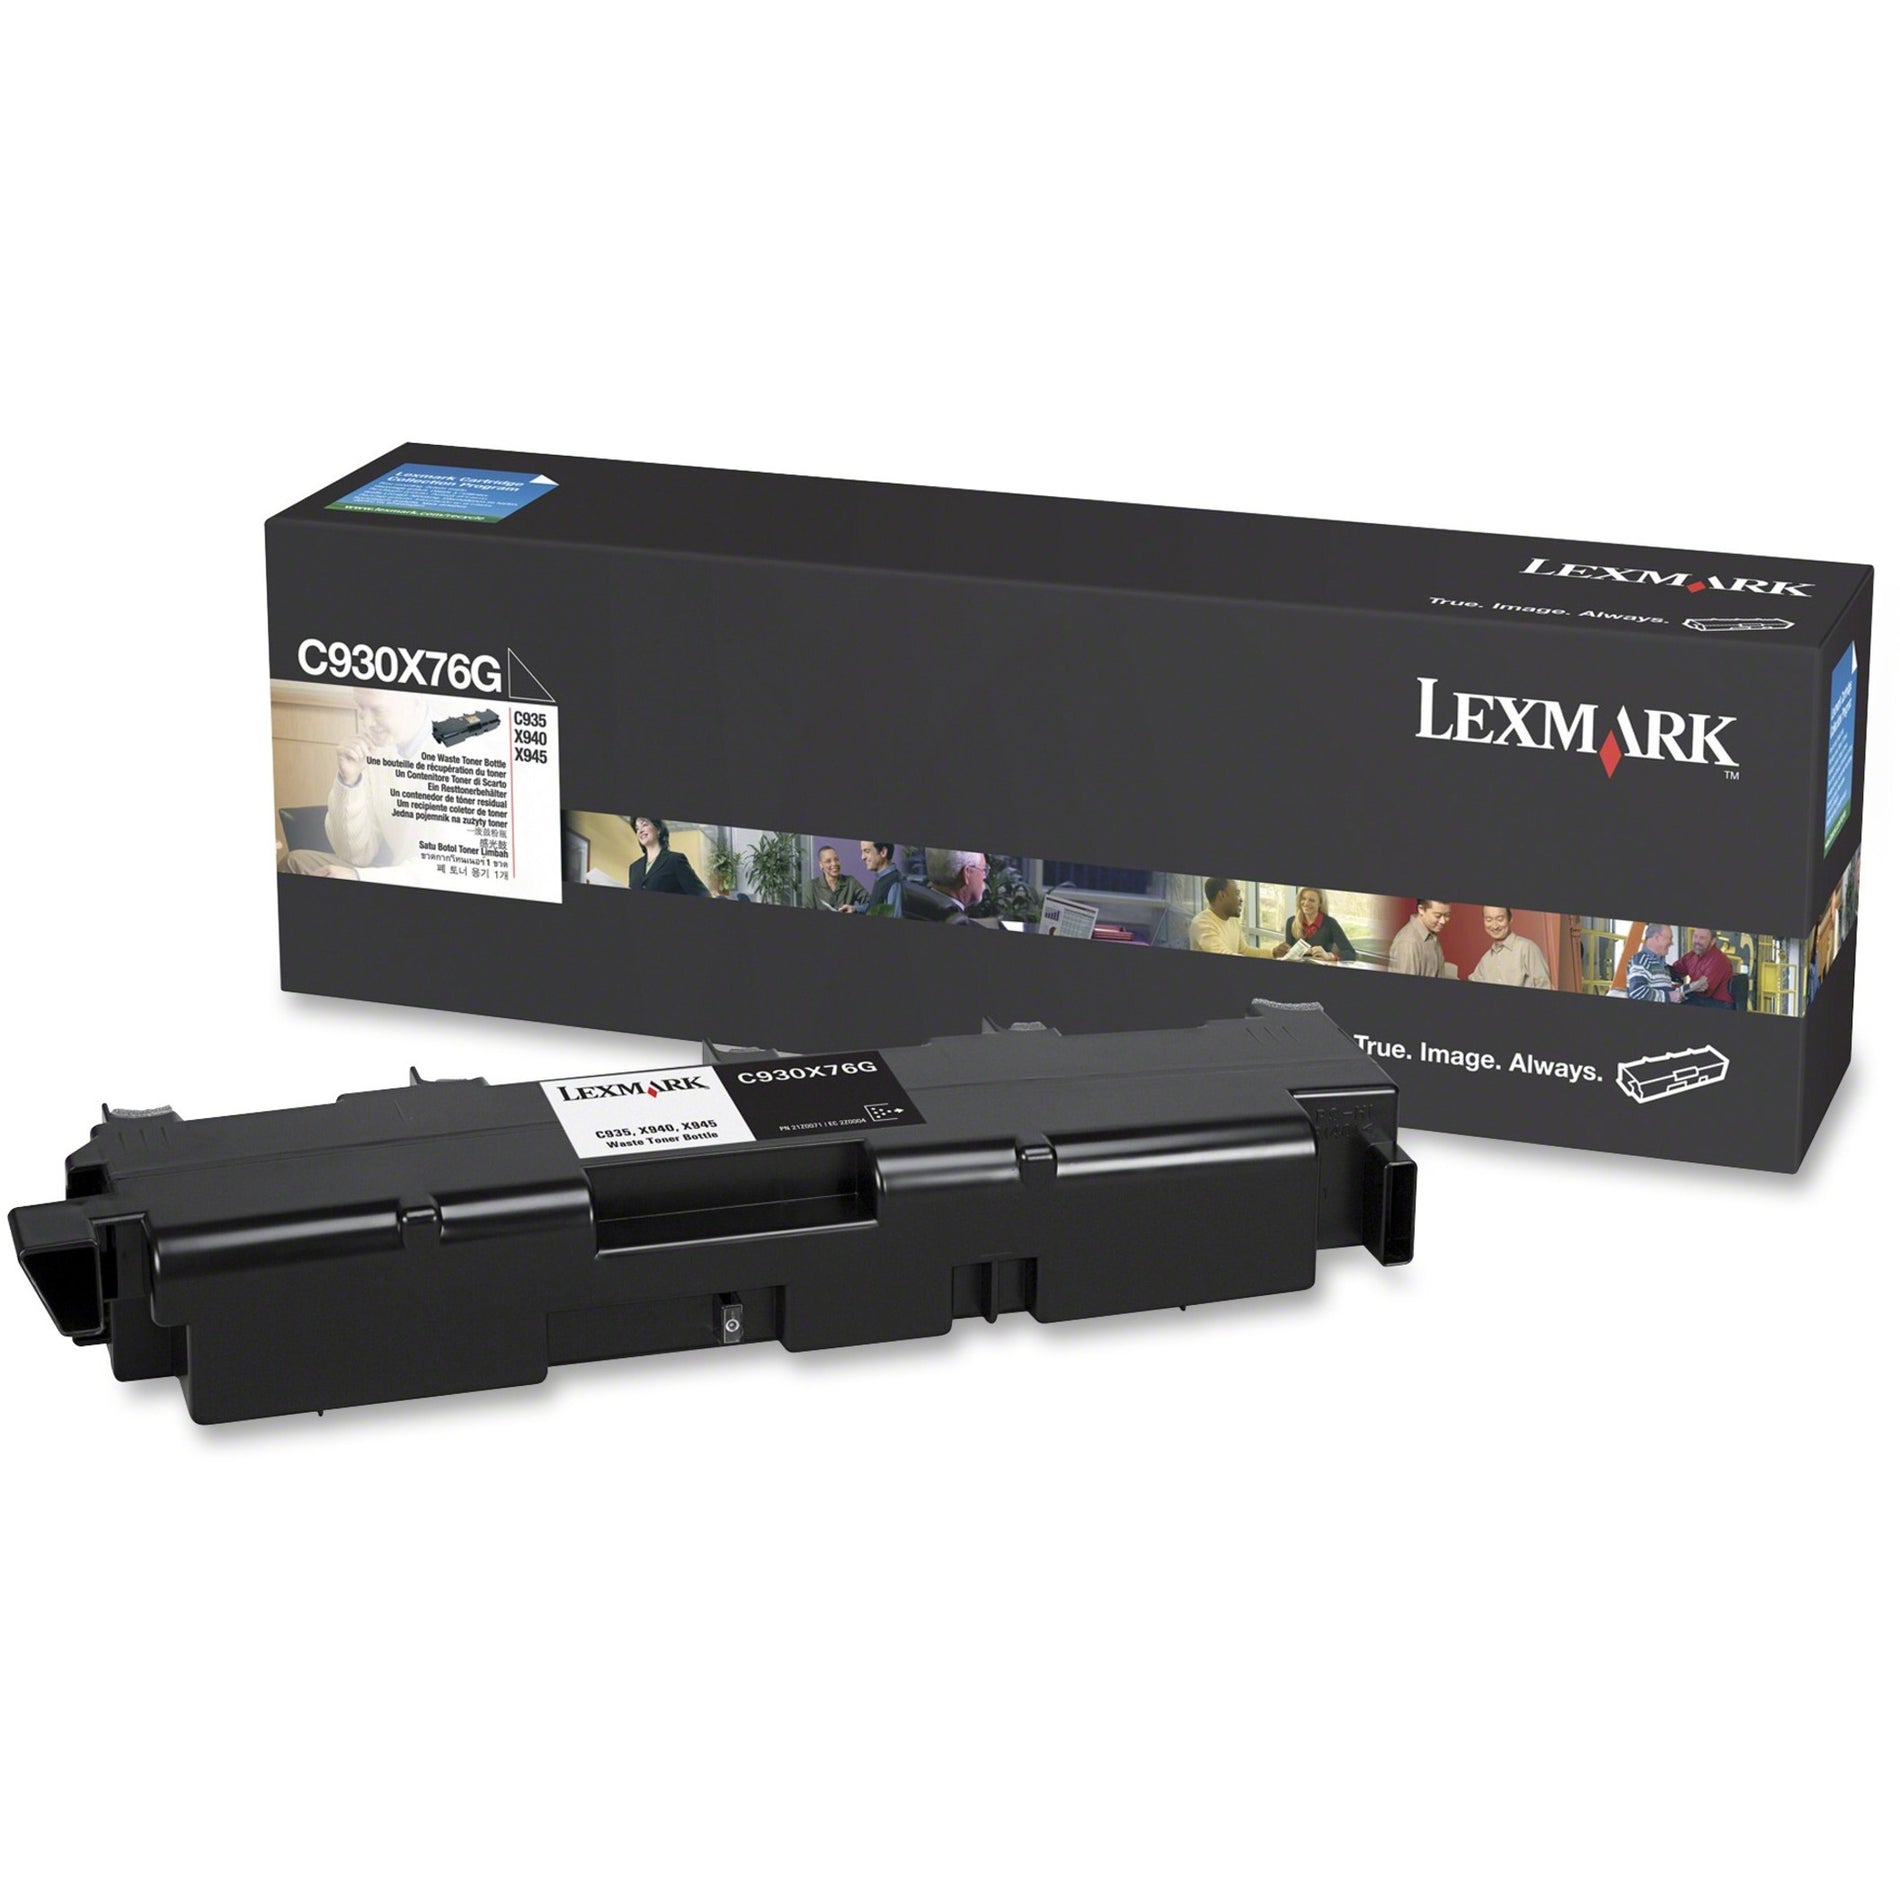 Lexmark C930X76G Waste Toner Unit - Color Laser, 30000 Images